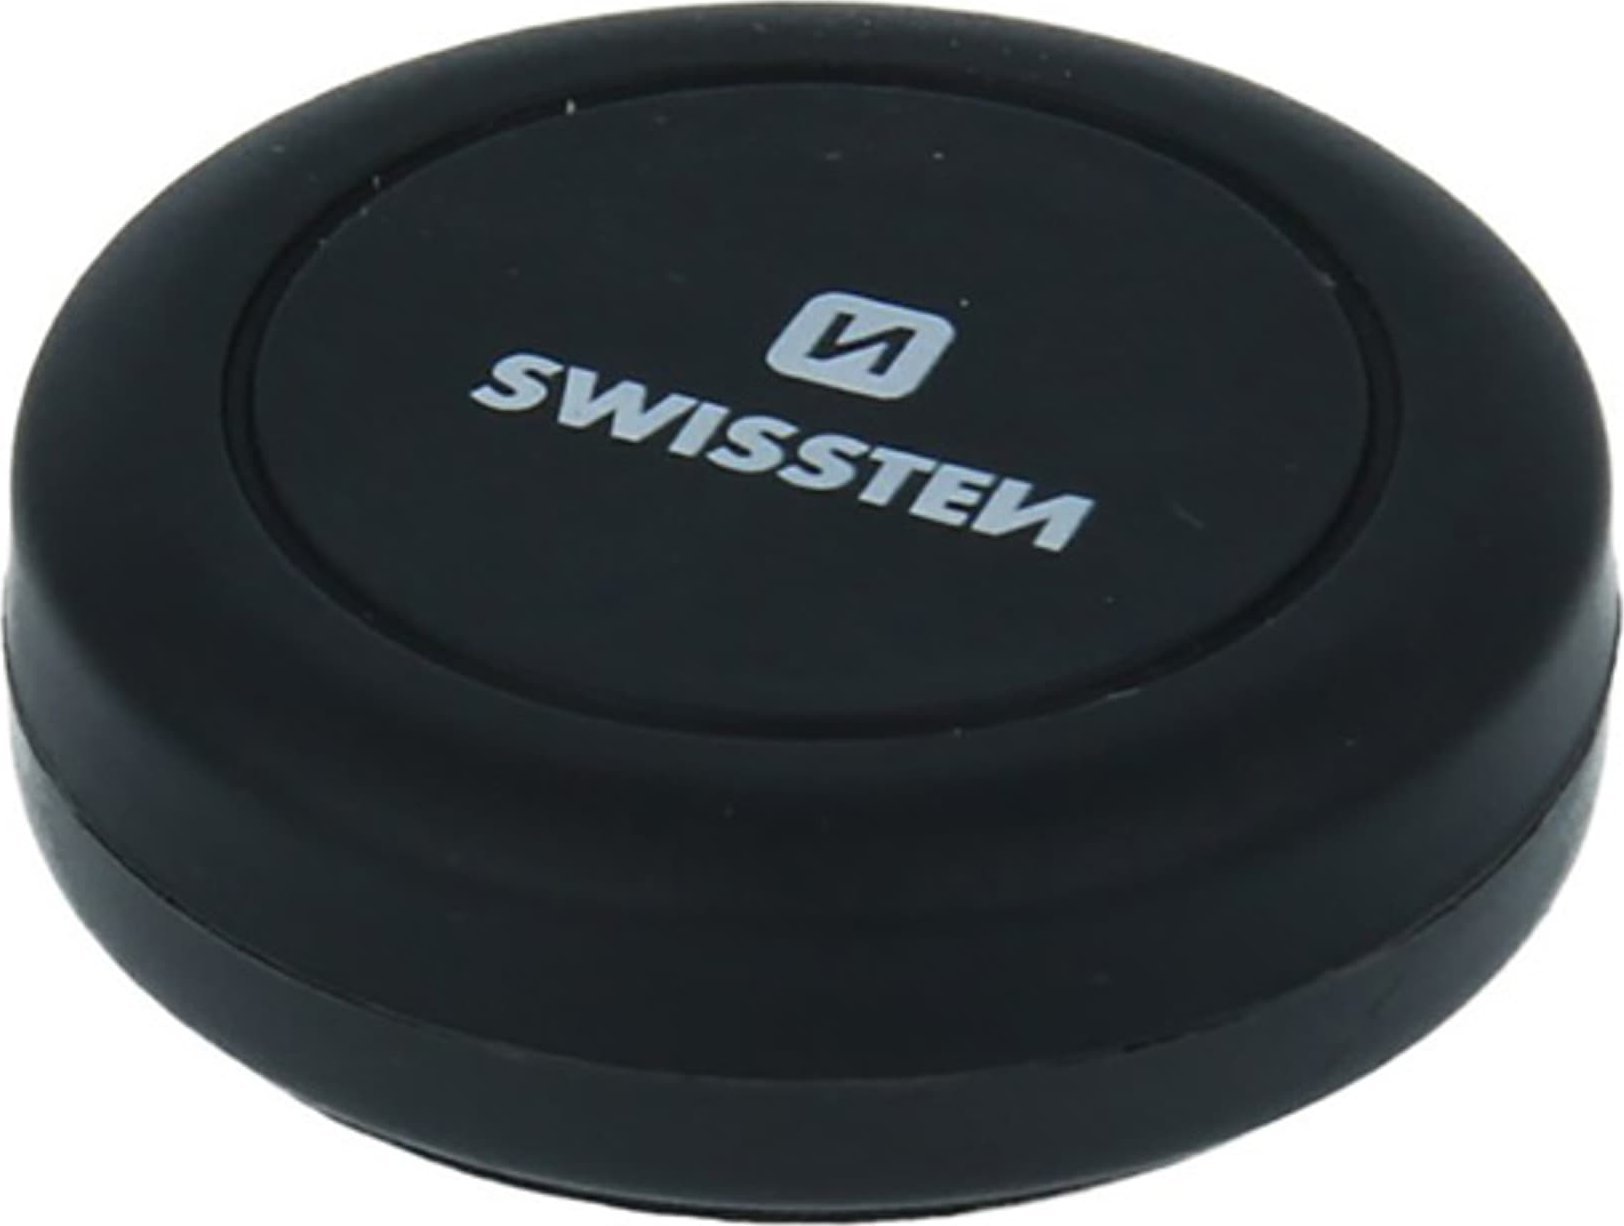 Swissten Suport magnetic pentru telefon sau GPS SWISSTEN pentru masina, S-Grip Dashboard M10, negru, metal, cu lipici, negru, telefon